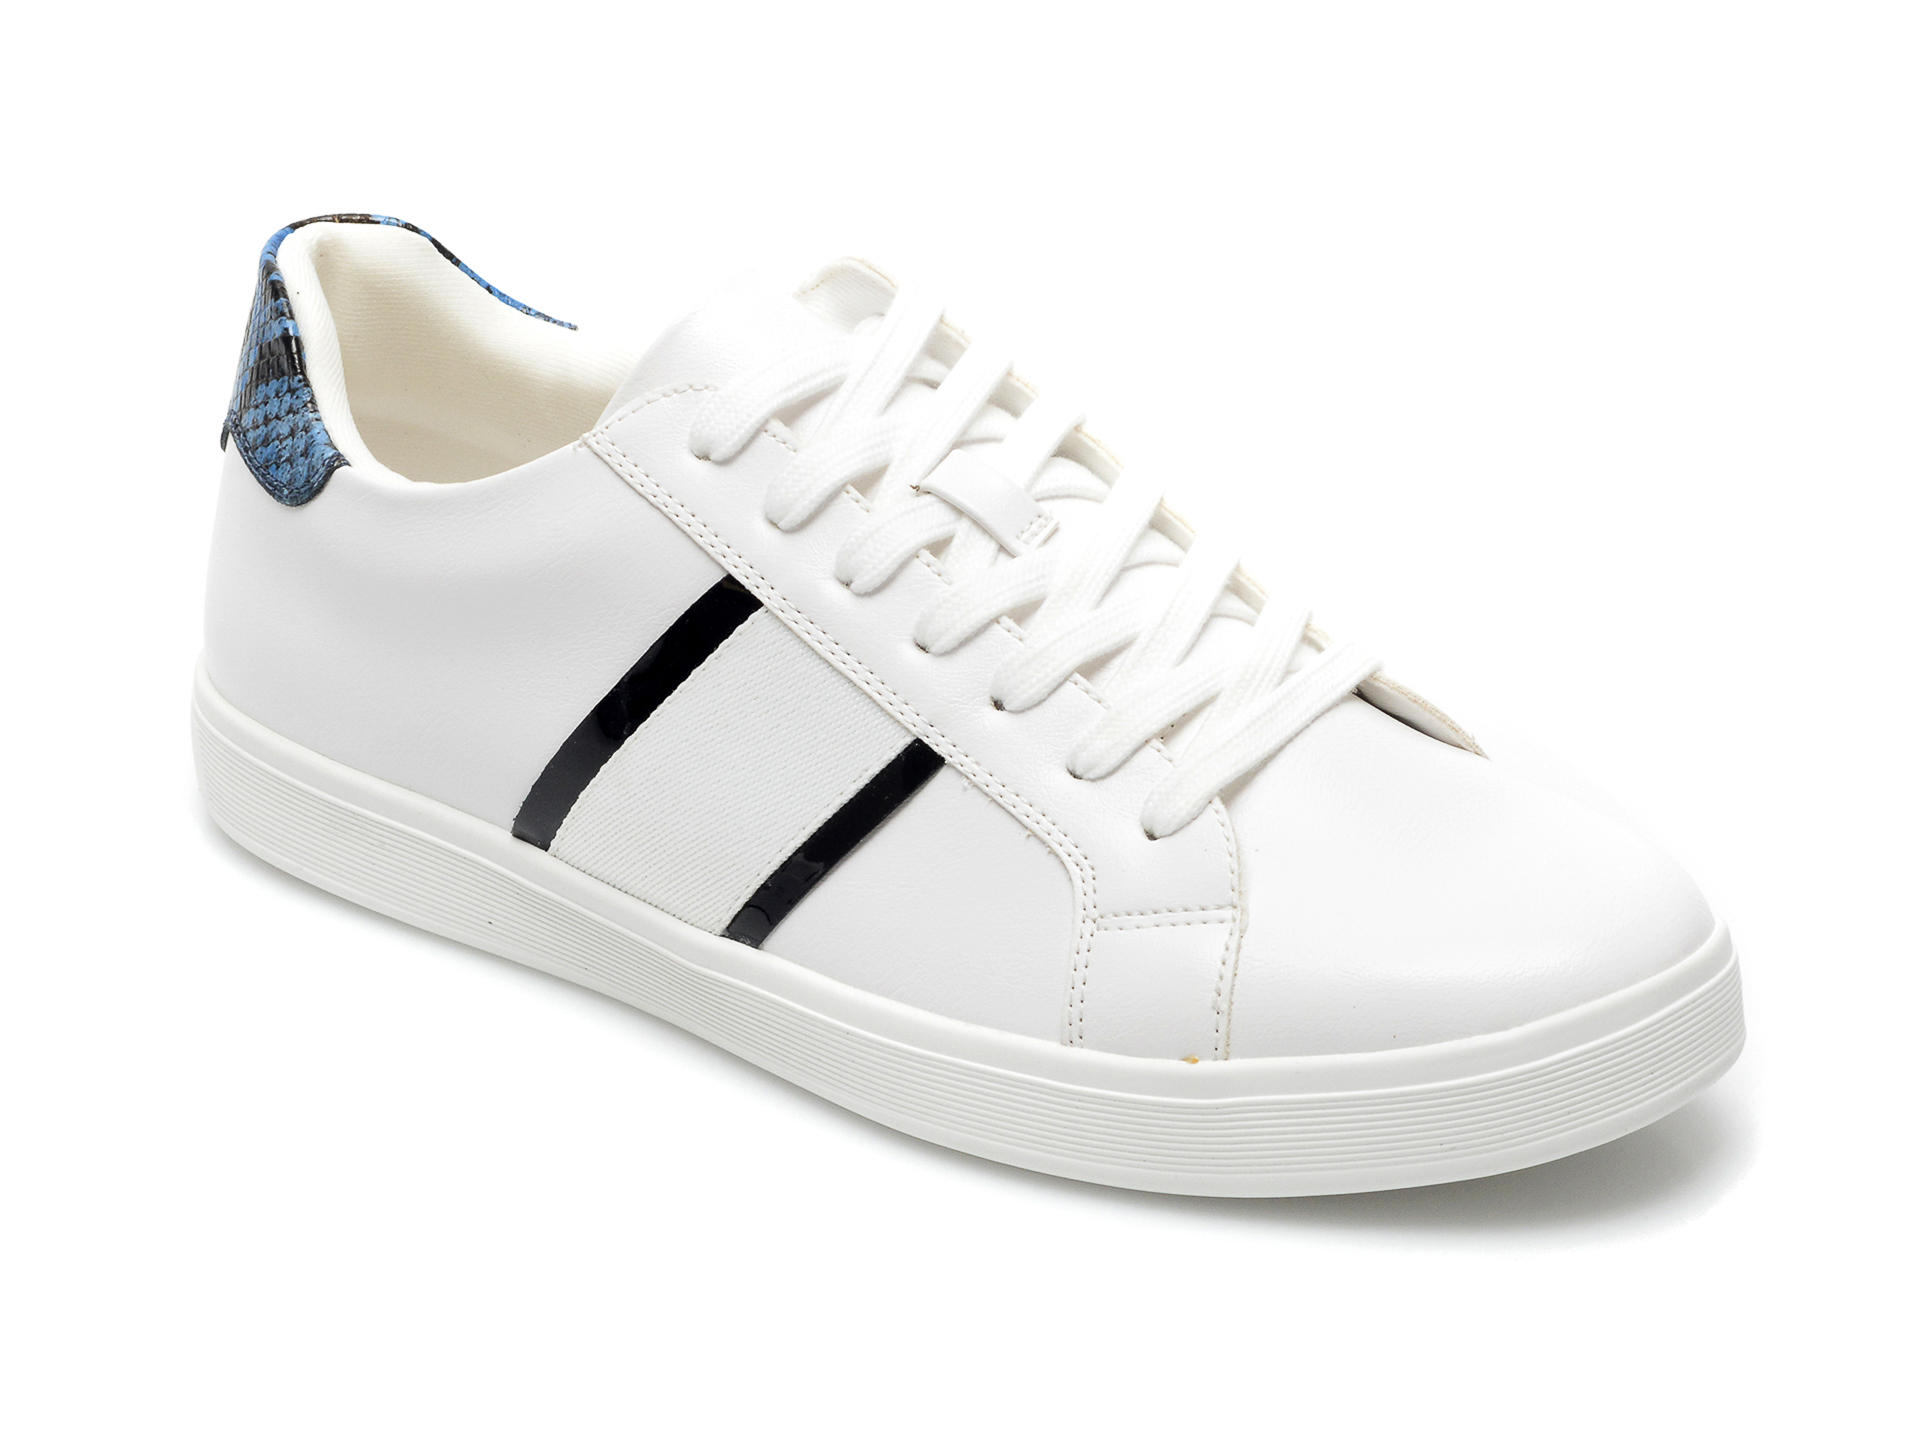 Pantofi sport ALDO albi, Cowien100, din piele ecologica Aldo